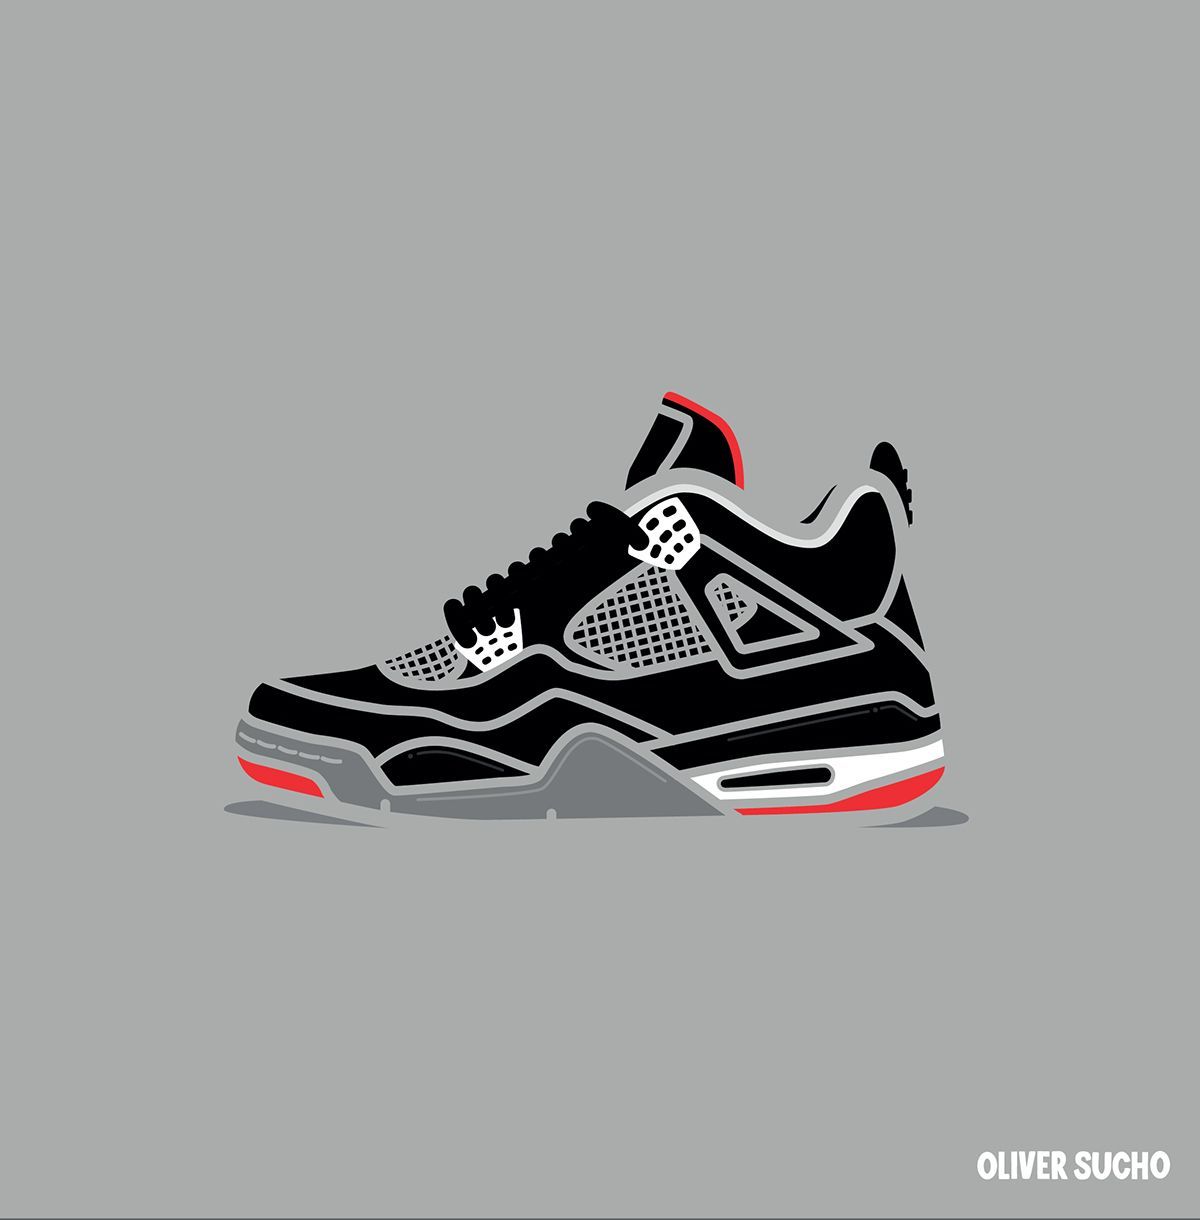 Air Jordan 4 Minimal Illustration Series. Sneaker art, Sneakers